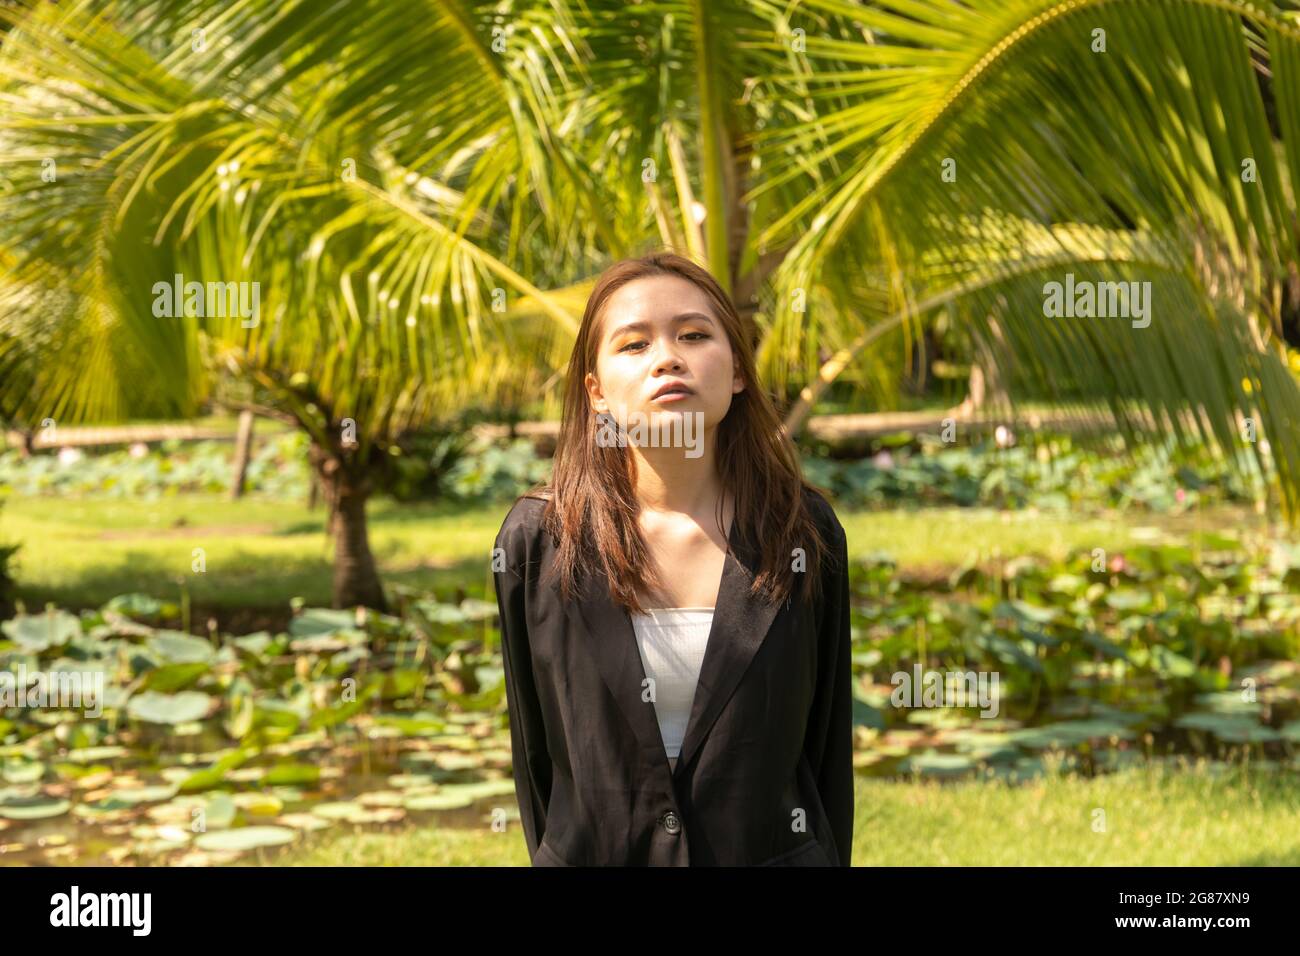 Une jeune femme d'Asie du Sud portant un manteau habillé noir pose sérieusement dans le parc Banque D'Images